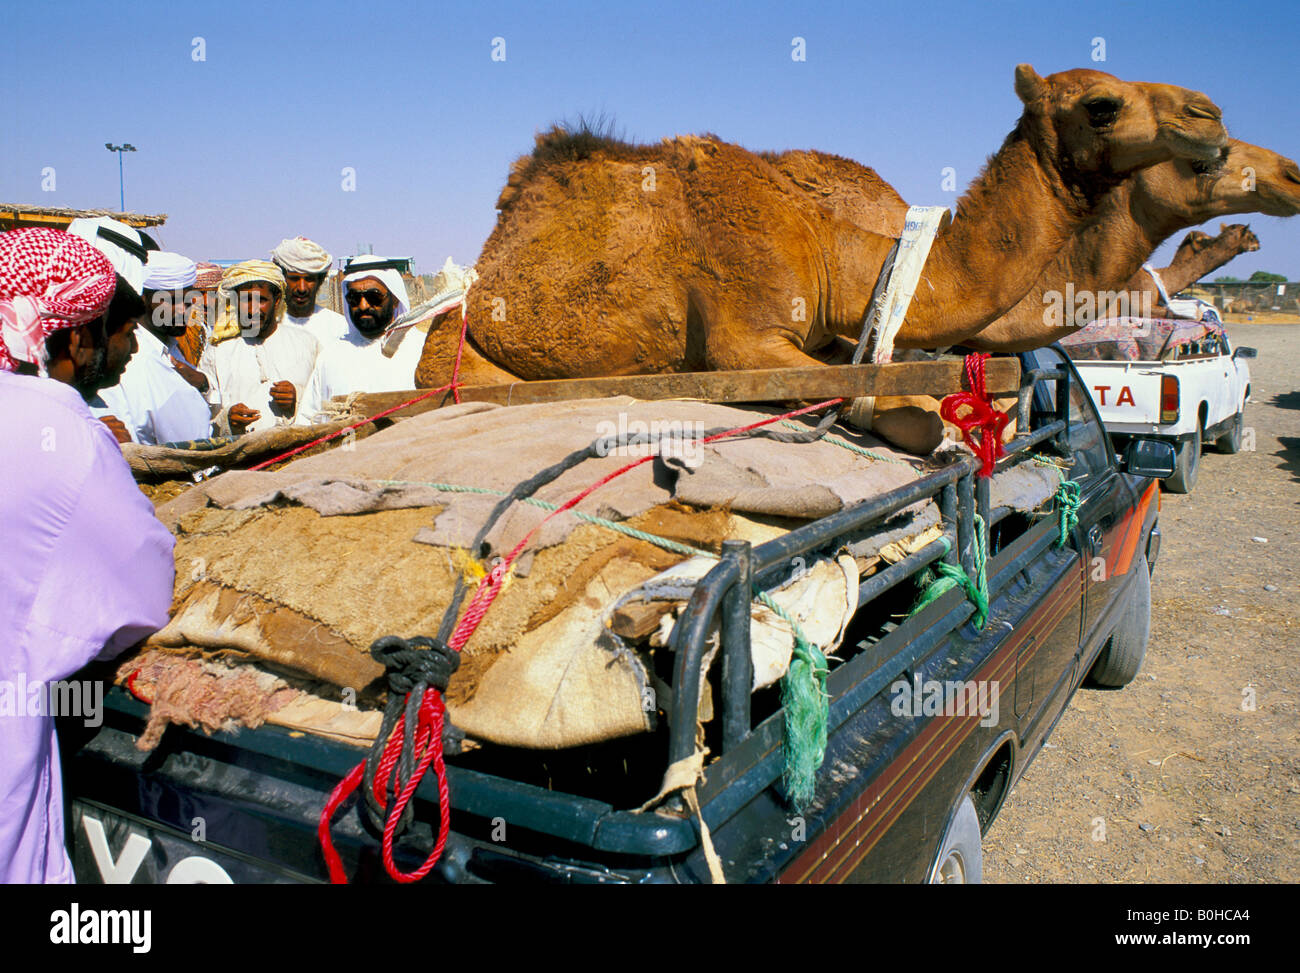 Dromadaires transportés par camion au marché, Emirats Arabes Unis. Banque D'Images